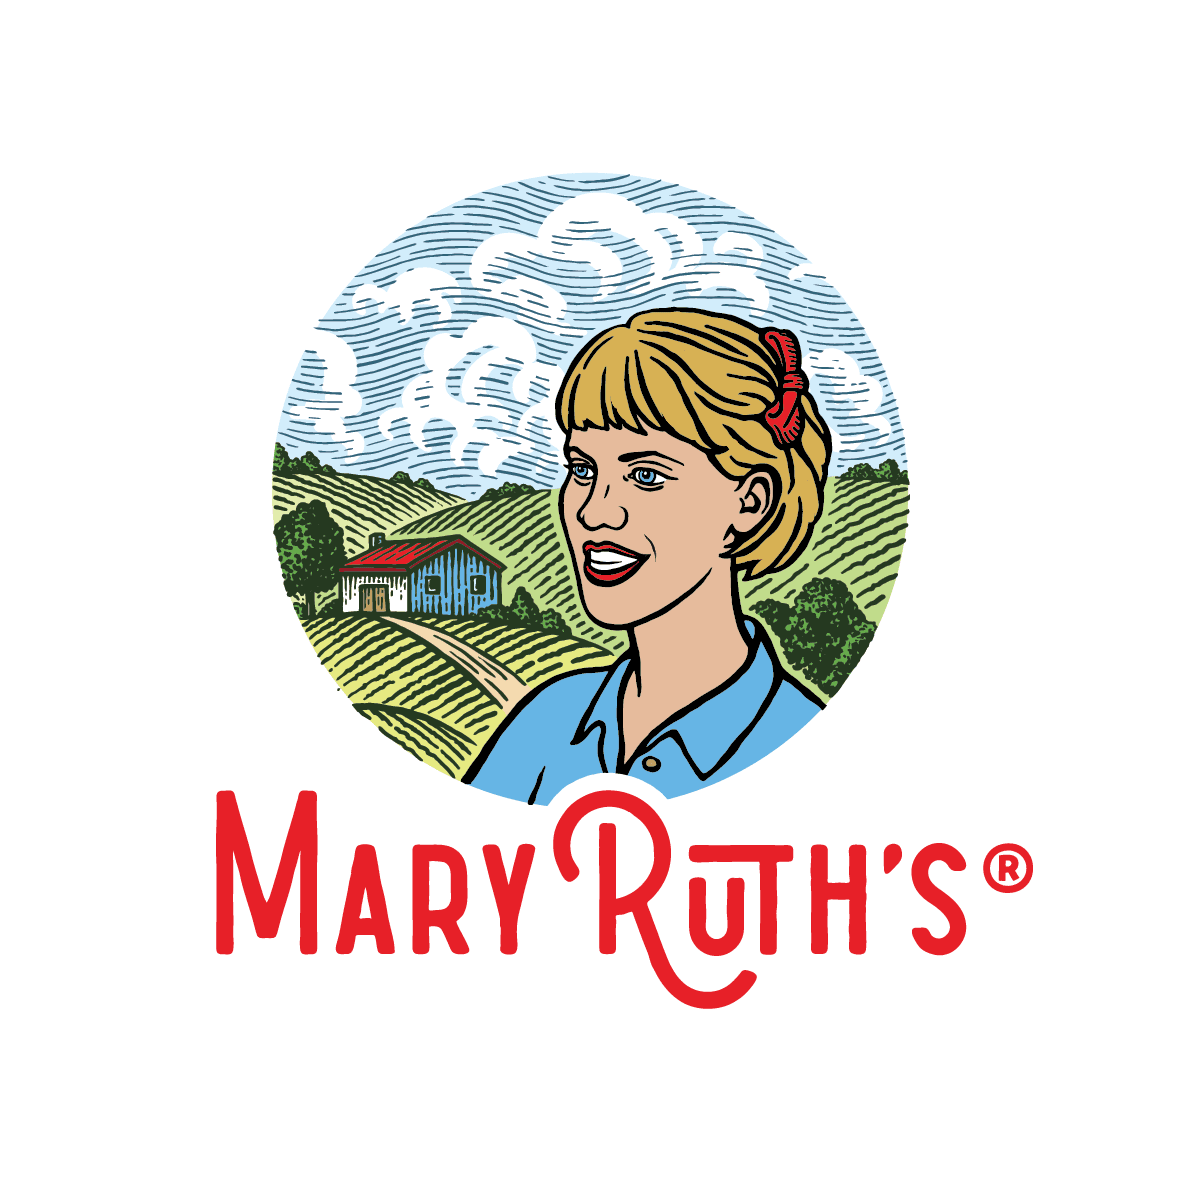 MaryRuth's logo